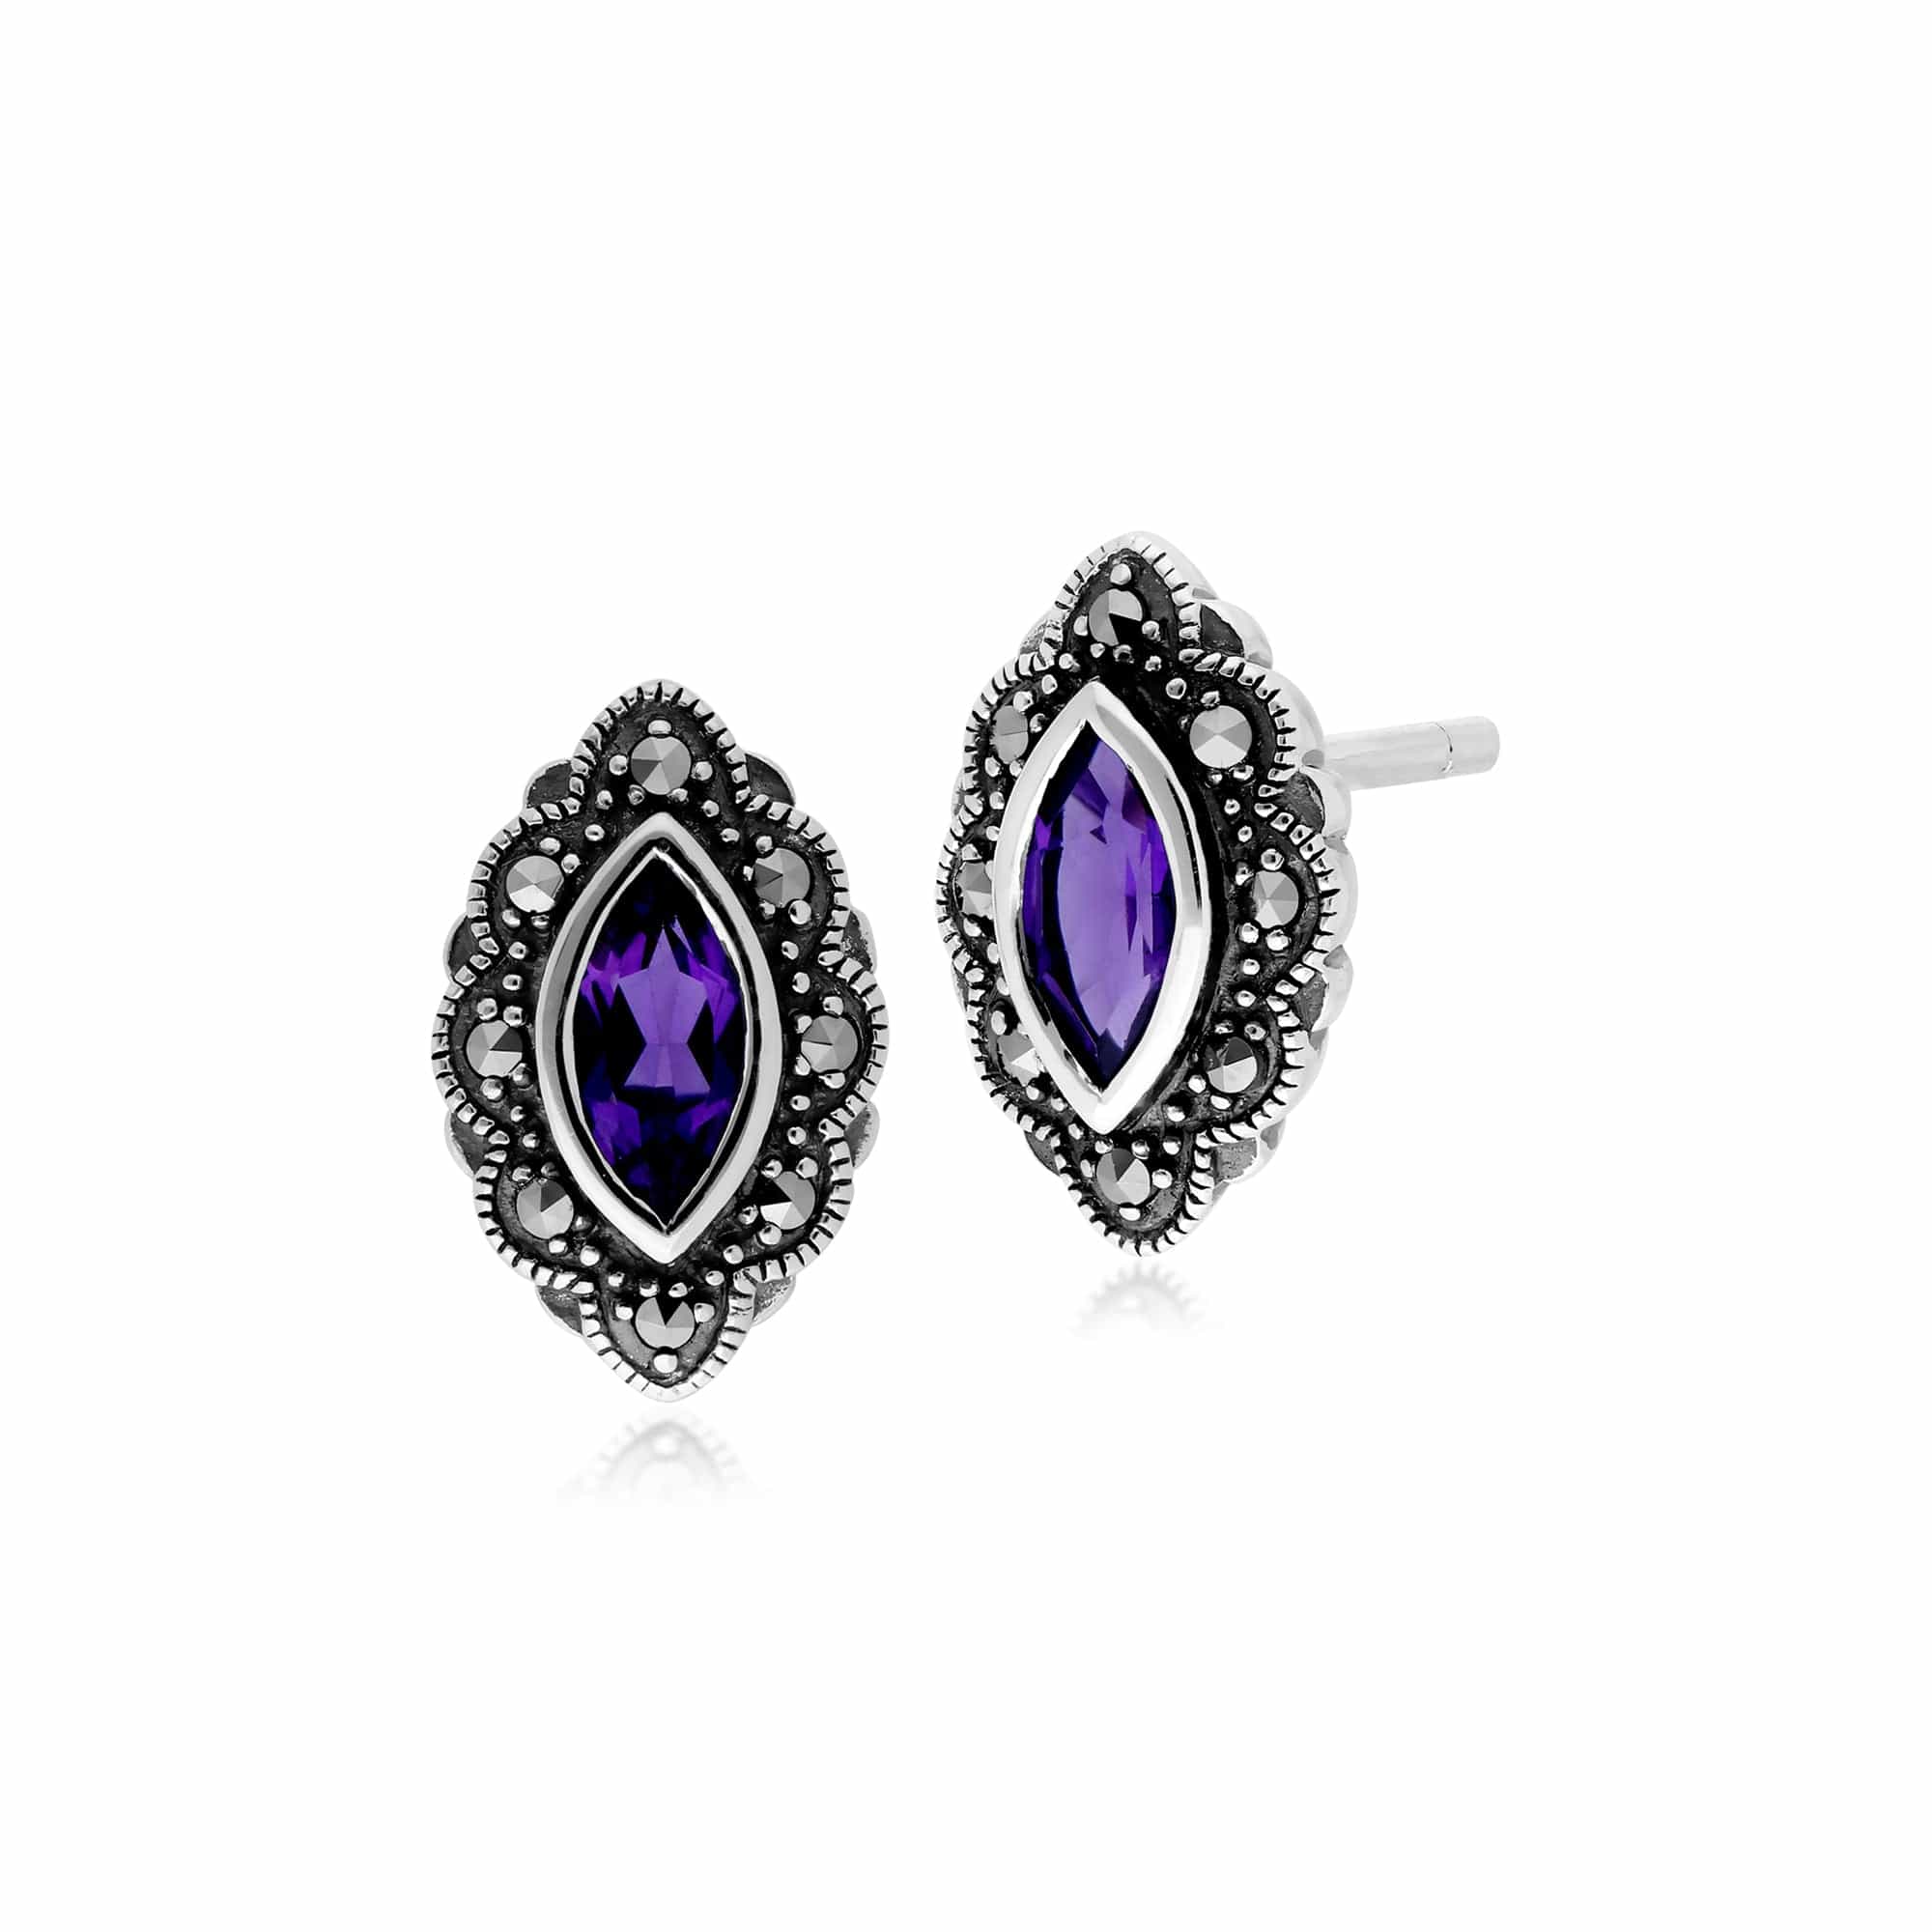 214E852501925 Gemondo Sterling Silver Amethyst & Marcasite Art Nouveau Stud Earrings 1